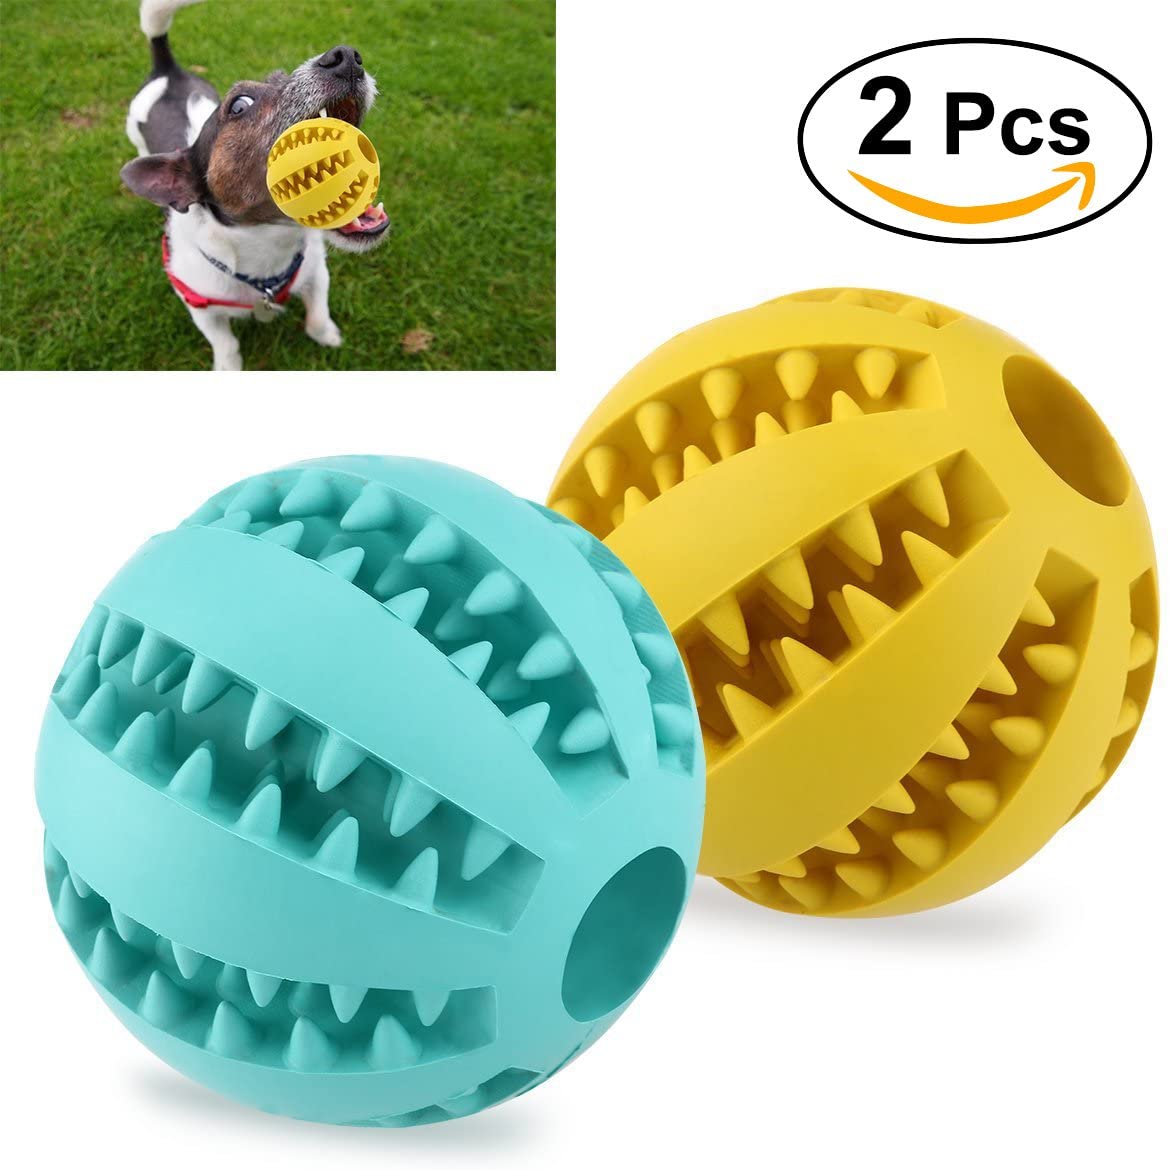  UEETEK 2pcs Juguete de goma masticar mascotas, Squeaker Squeeze Pet Ball juguetes, bola interactiva para mascotas perros masticar jugar Traning ejercicio, diámetro 7.1cm (amarillo + azul) 